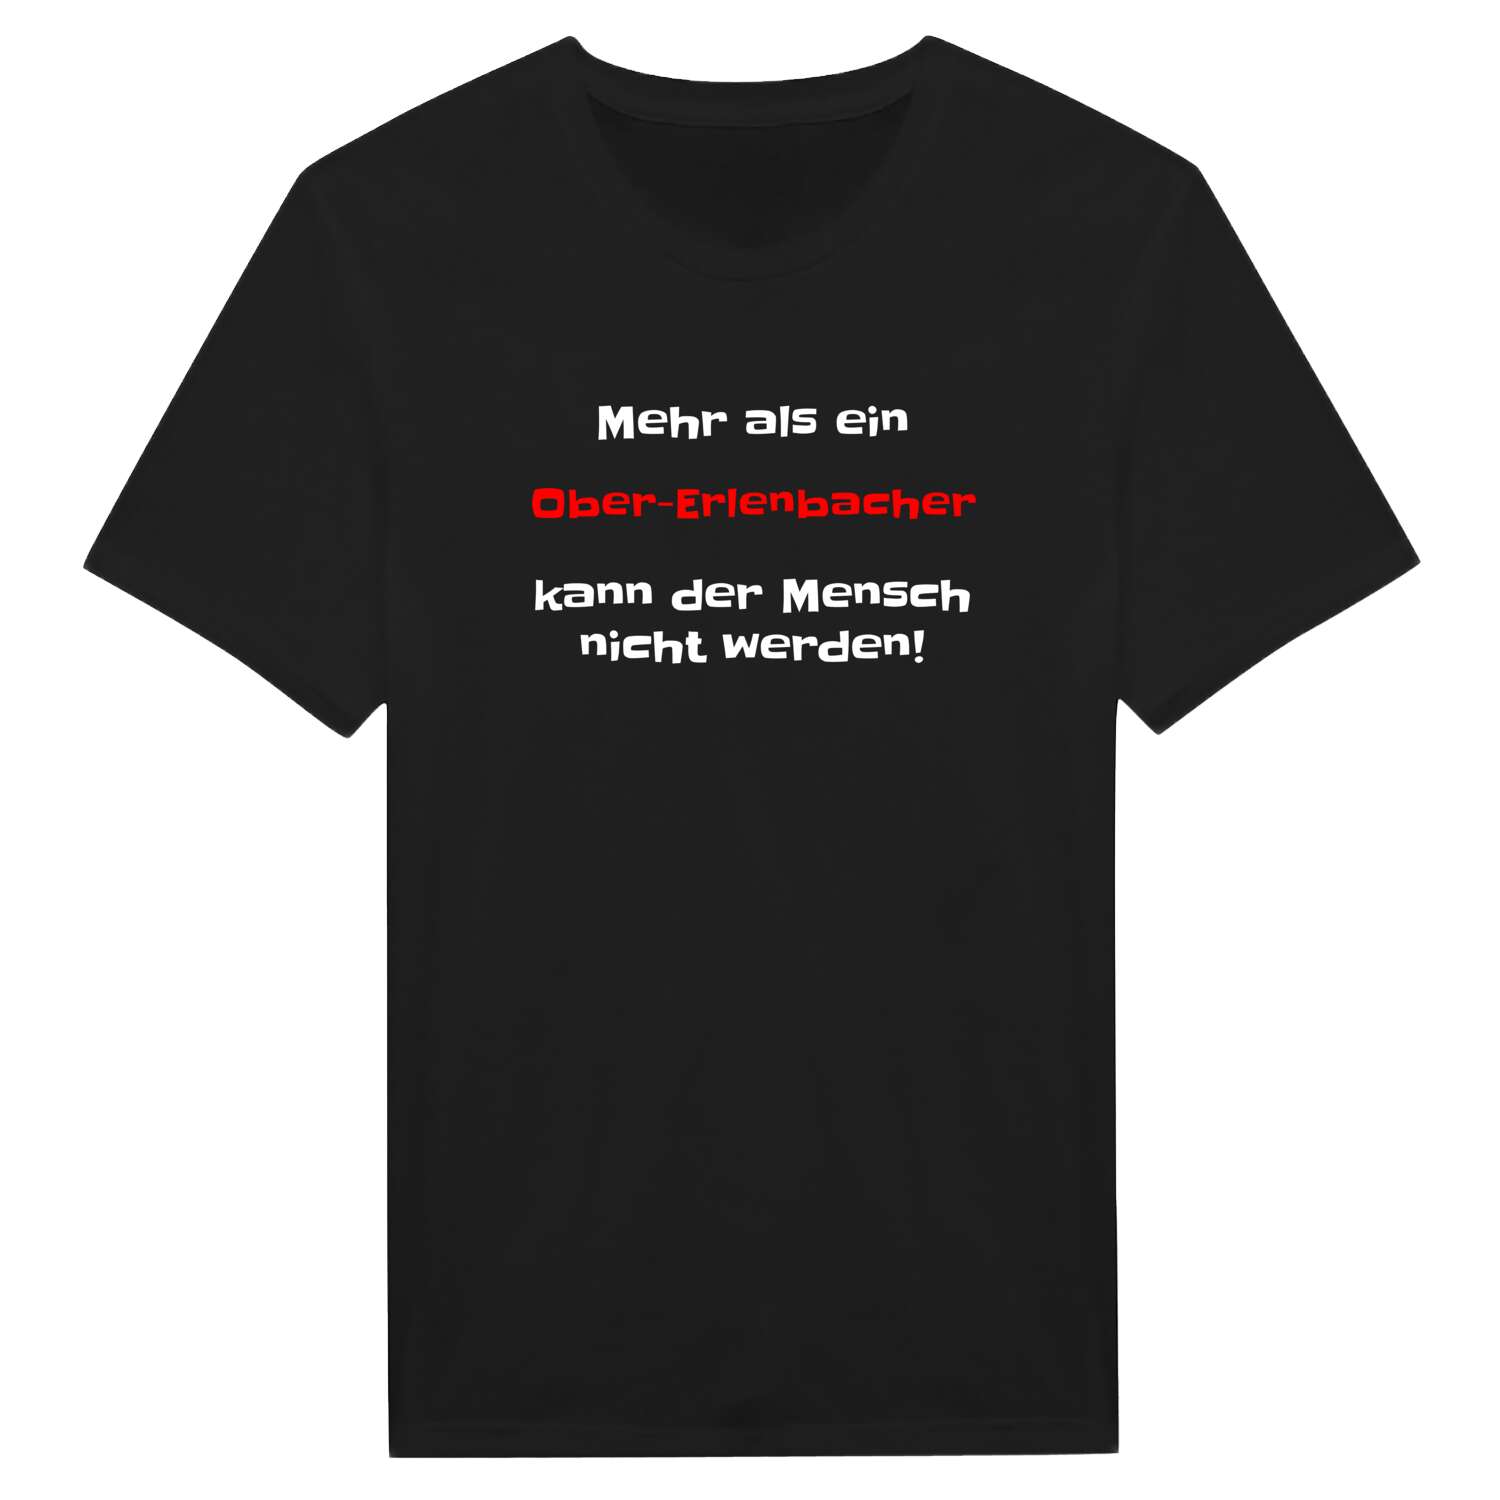 Ober-Erlenbach T-Shirt »Mehr als ein«